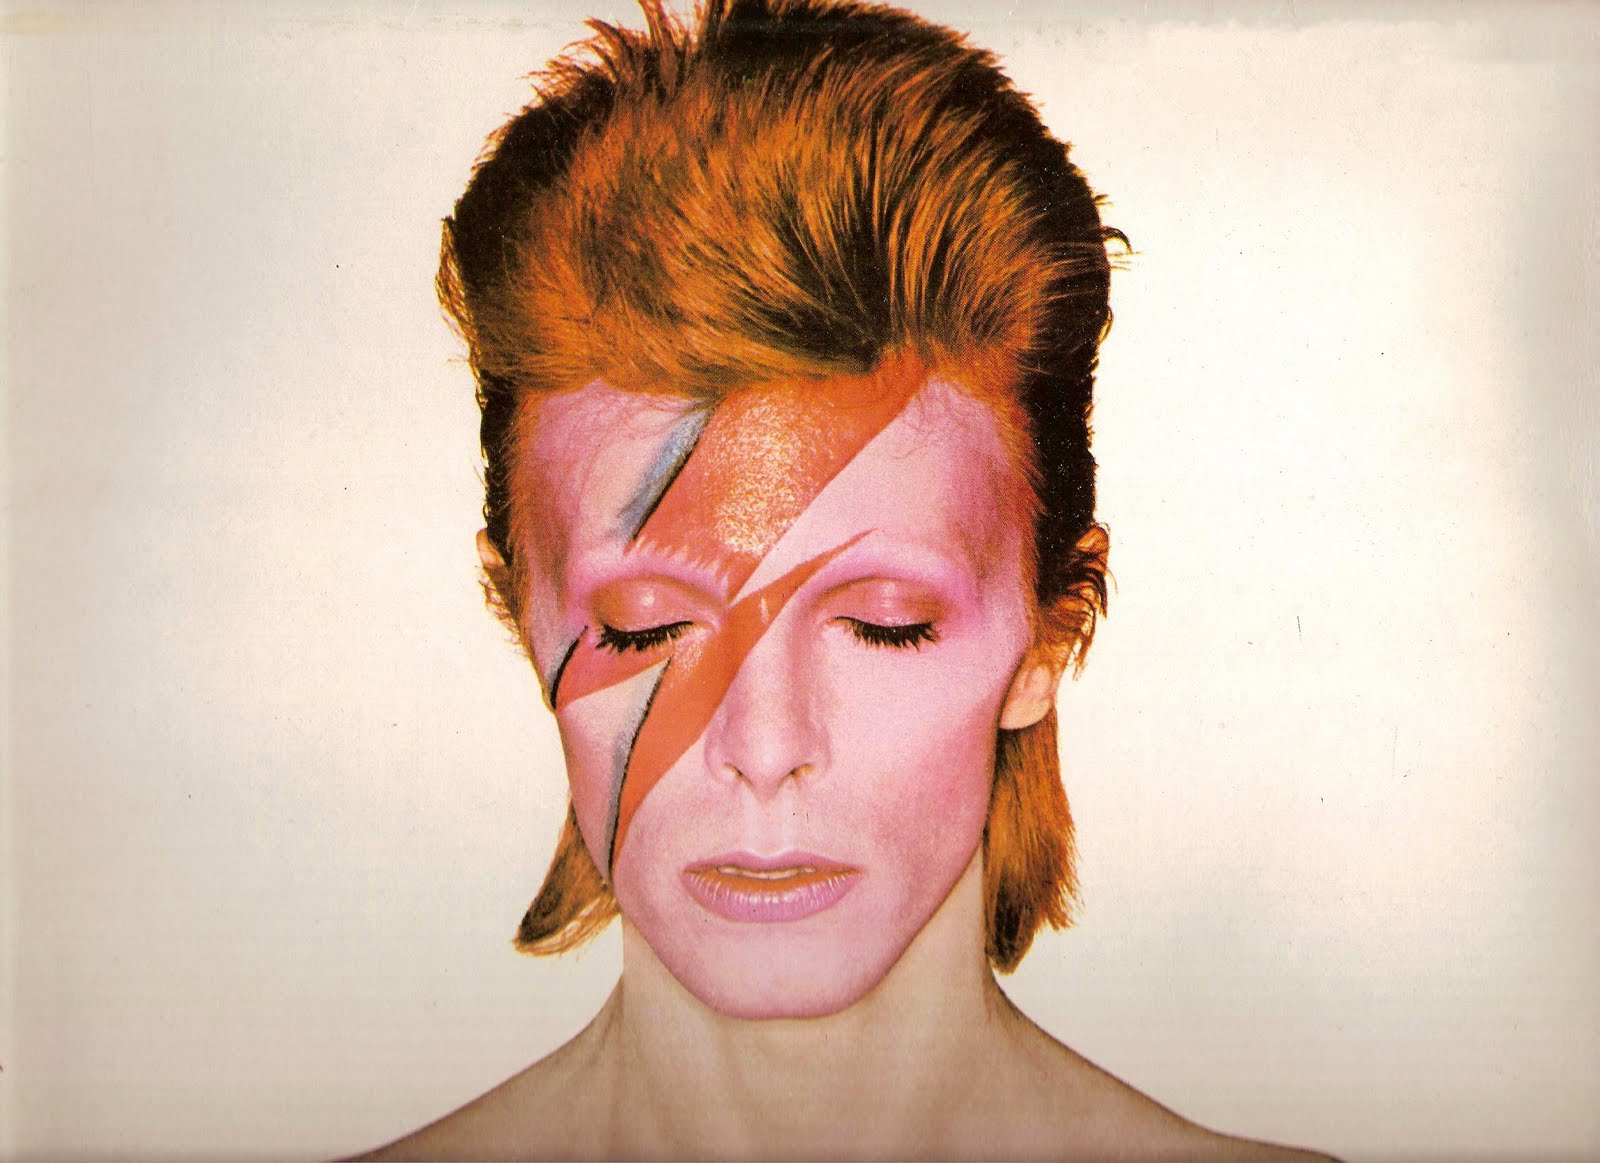 Pjevač David Bowie, koji se još 70-tih godina outovao kao biseksualac